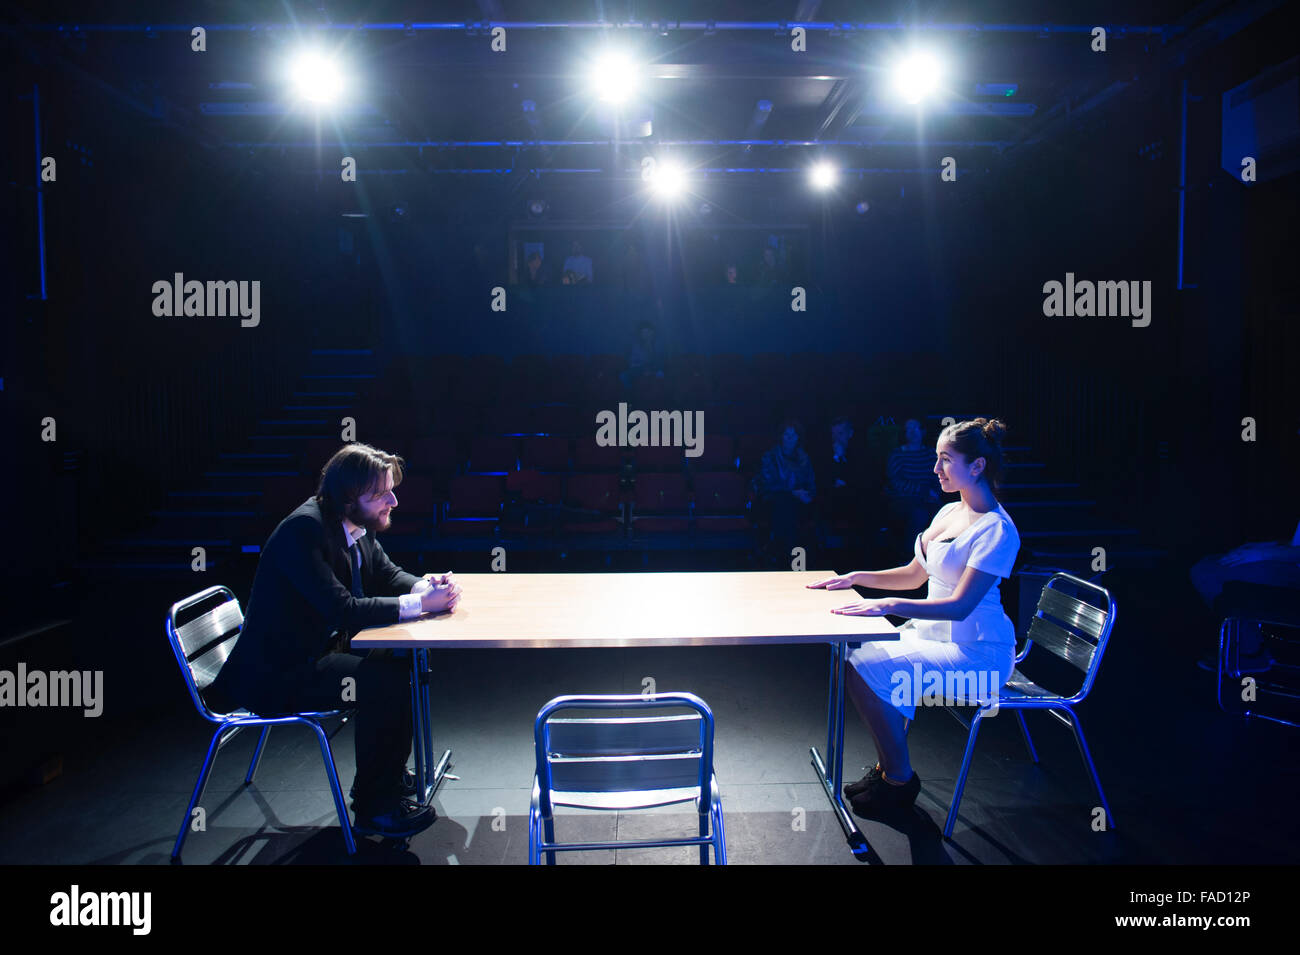 Theater studiert Bildung uk: zwei Jugendliche Schauspieler, ein Mann und eine Frau, auf der Bühne, sitzen einander gegenüber in einer Tabelle in einer Drama-Theater-Performance, Aberystwyth University, Wales UK Stockfoto